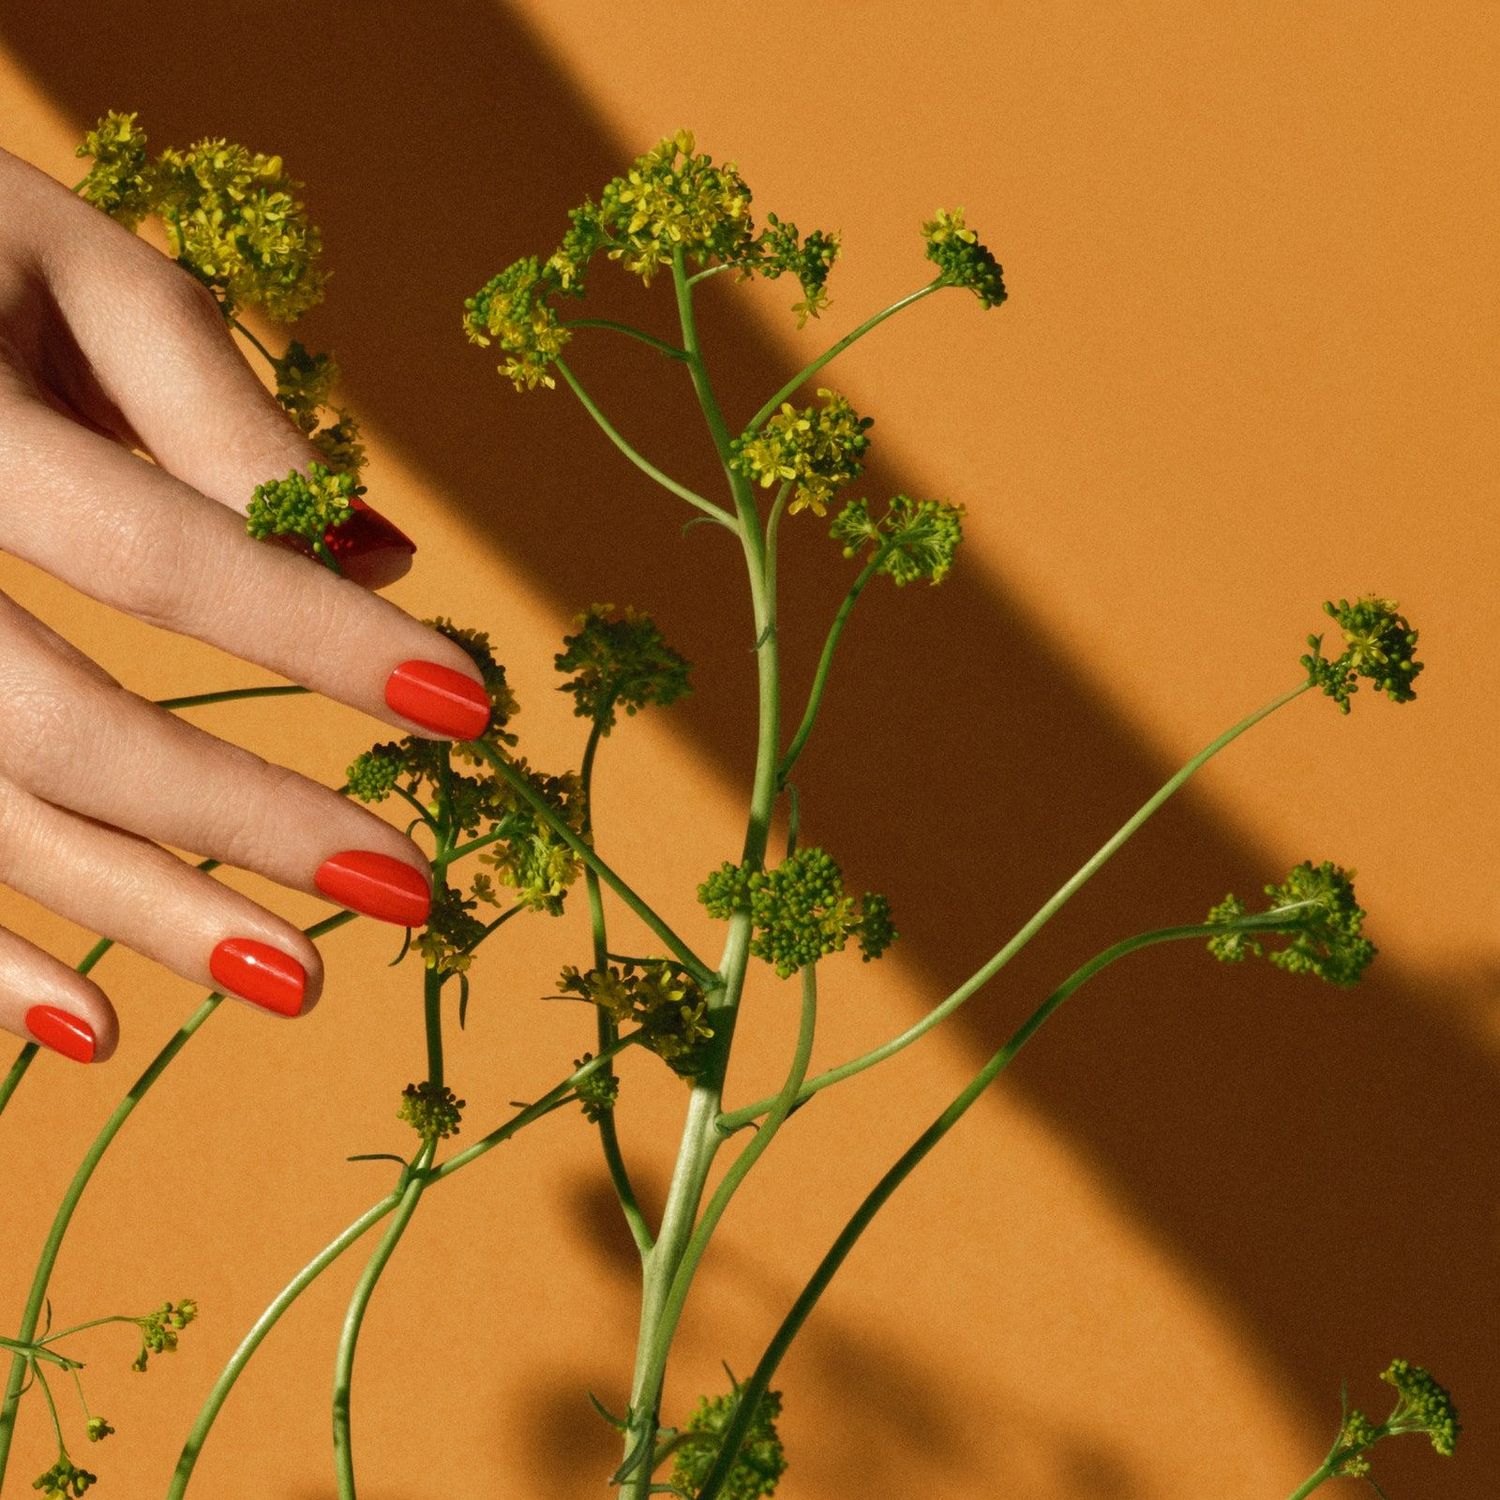 hermes manicure nails hands orange plant green 